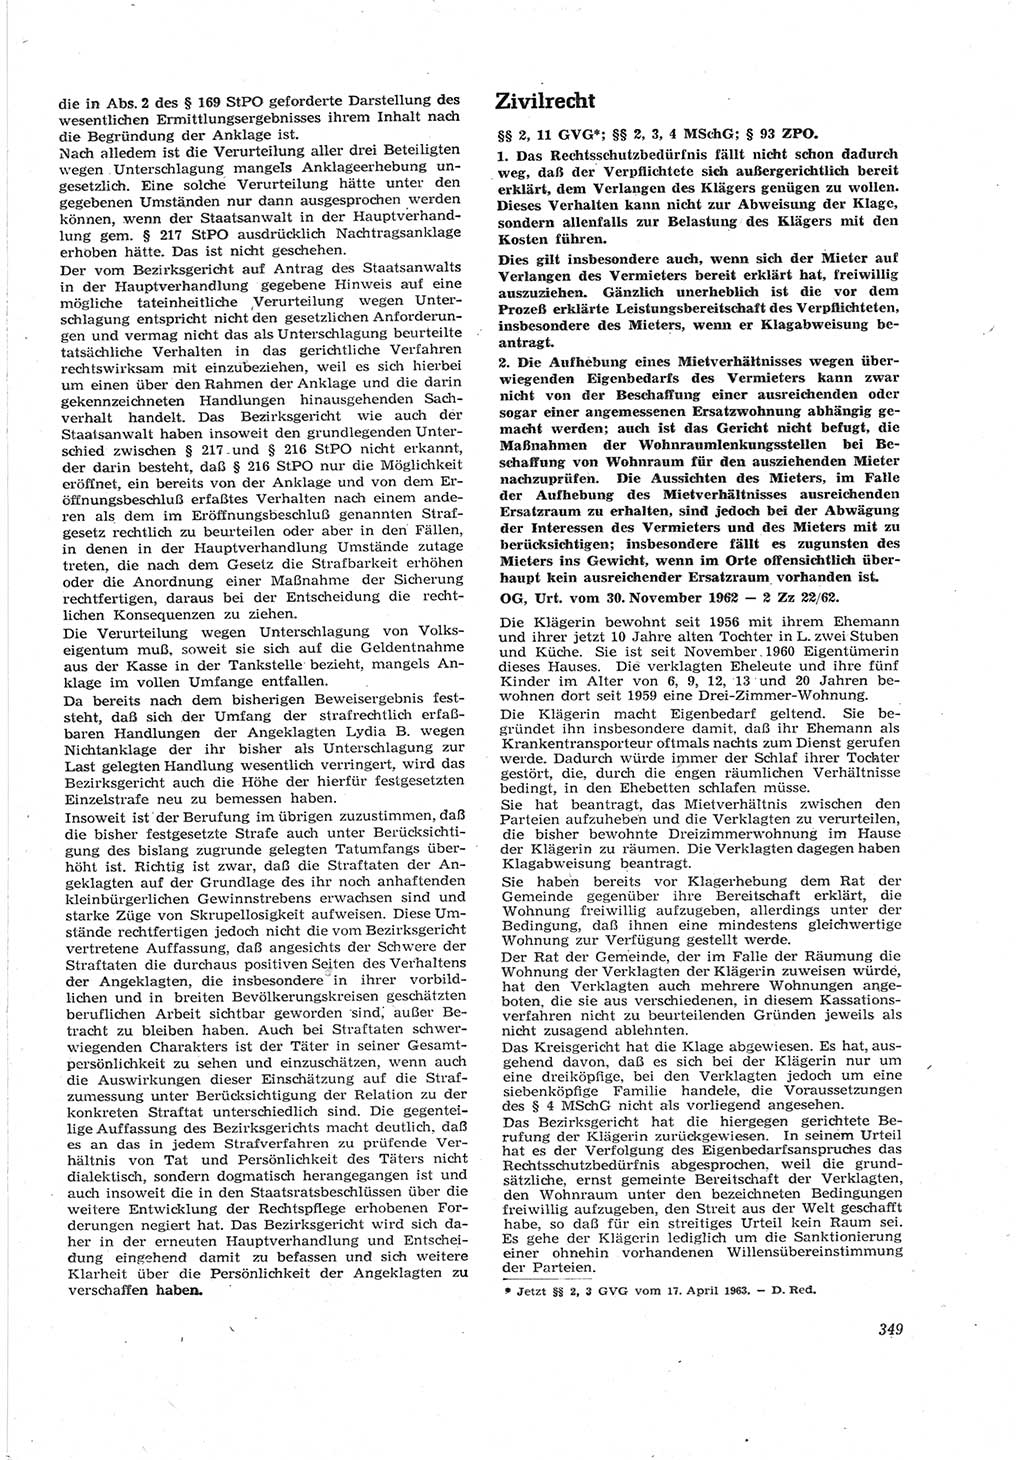 Neue Justiz (NJ), Zeitschrift für Recht und Rechtswissenschaft [Deutsche Demokratische Republik (DDR)], 17. Jahrgang 1963, Seite 349 (NJ DDR 1963, S. 349)